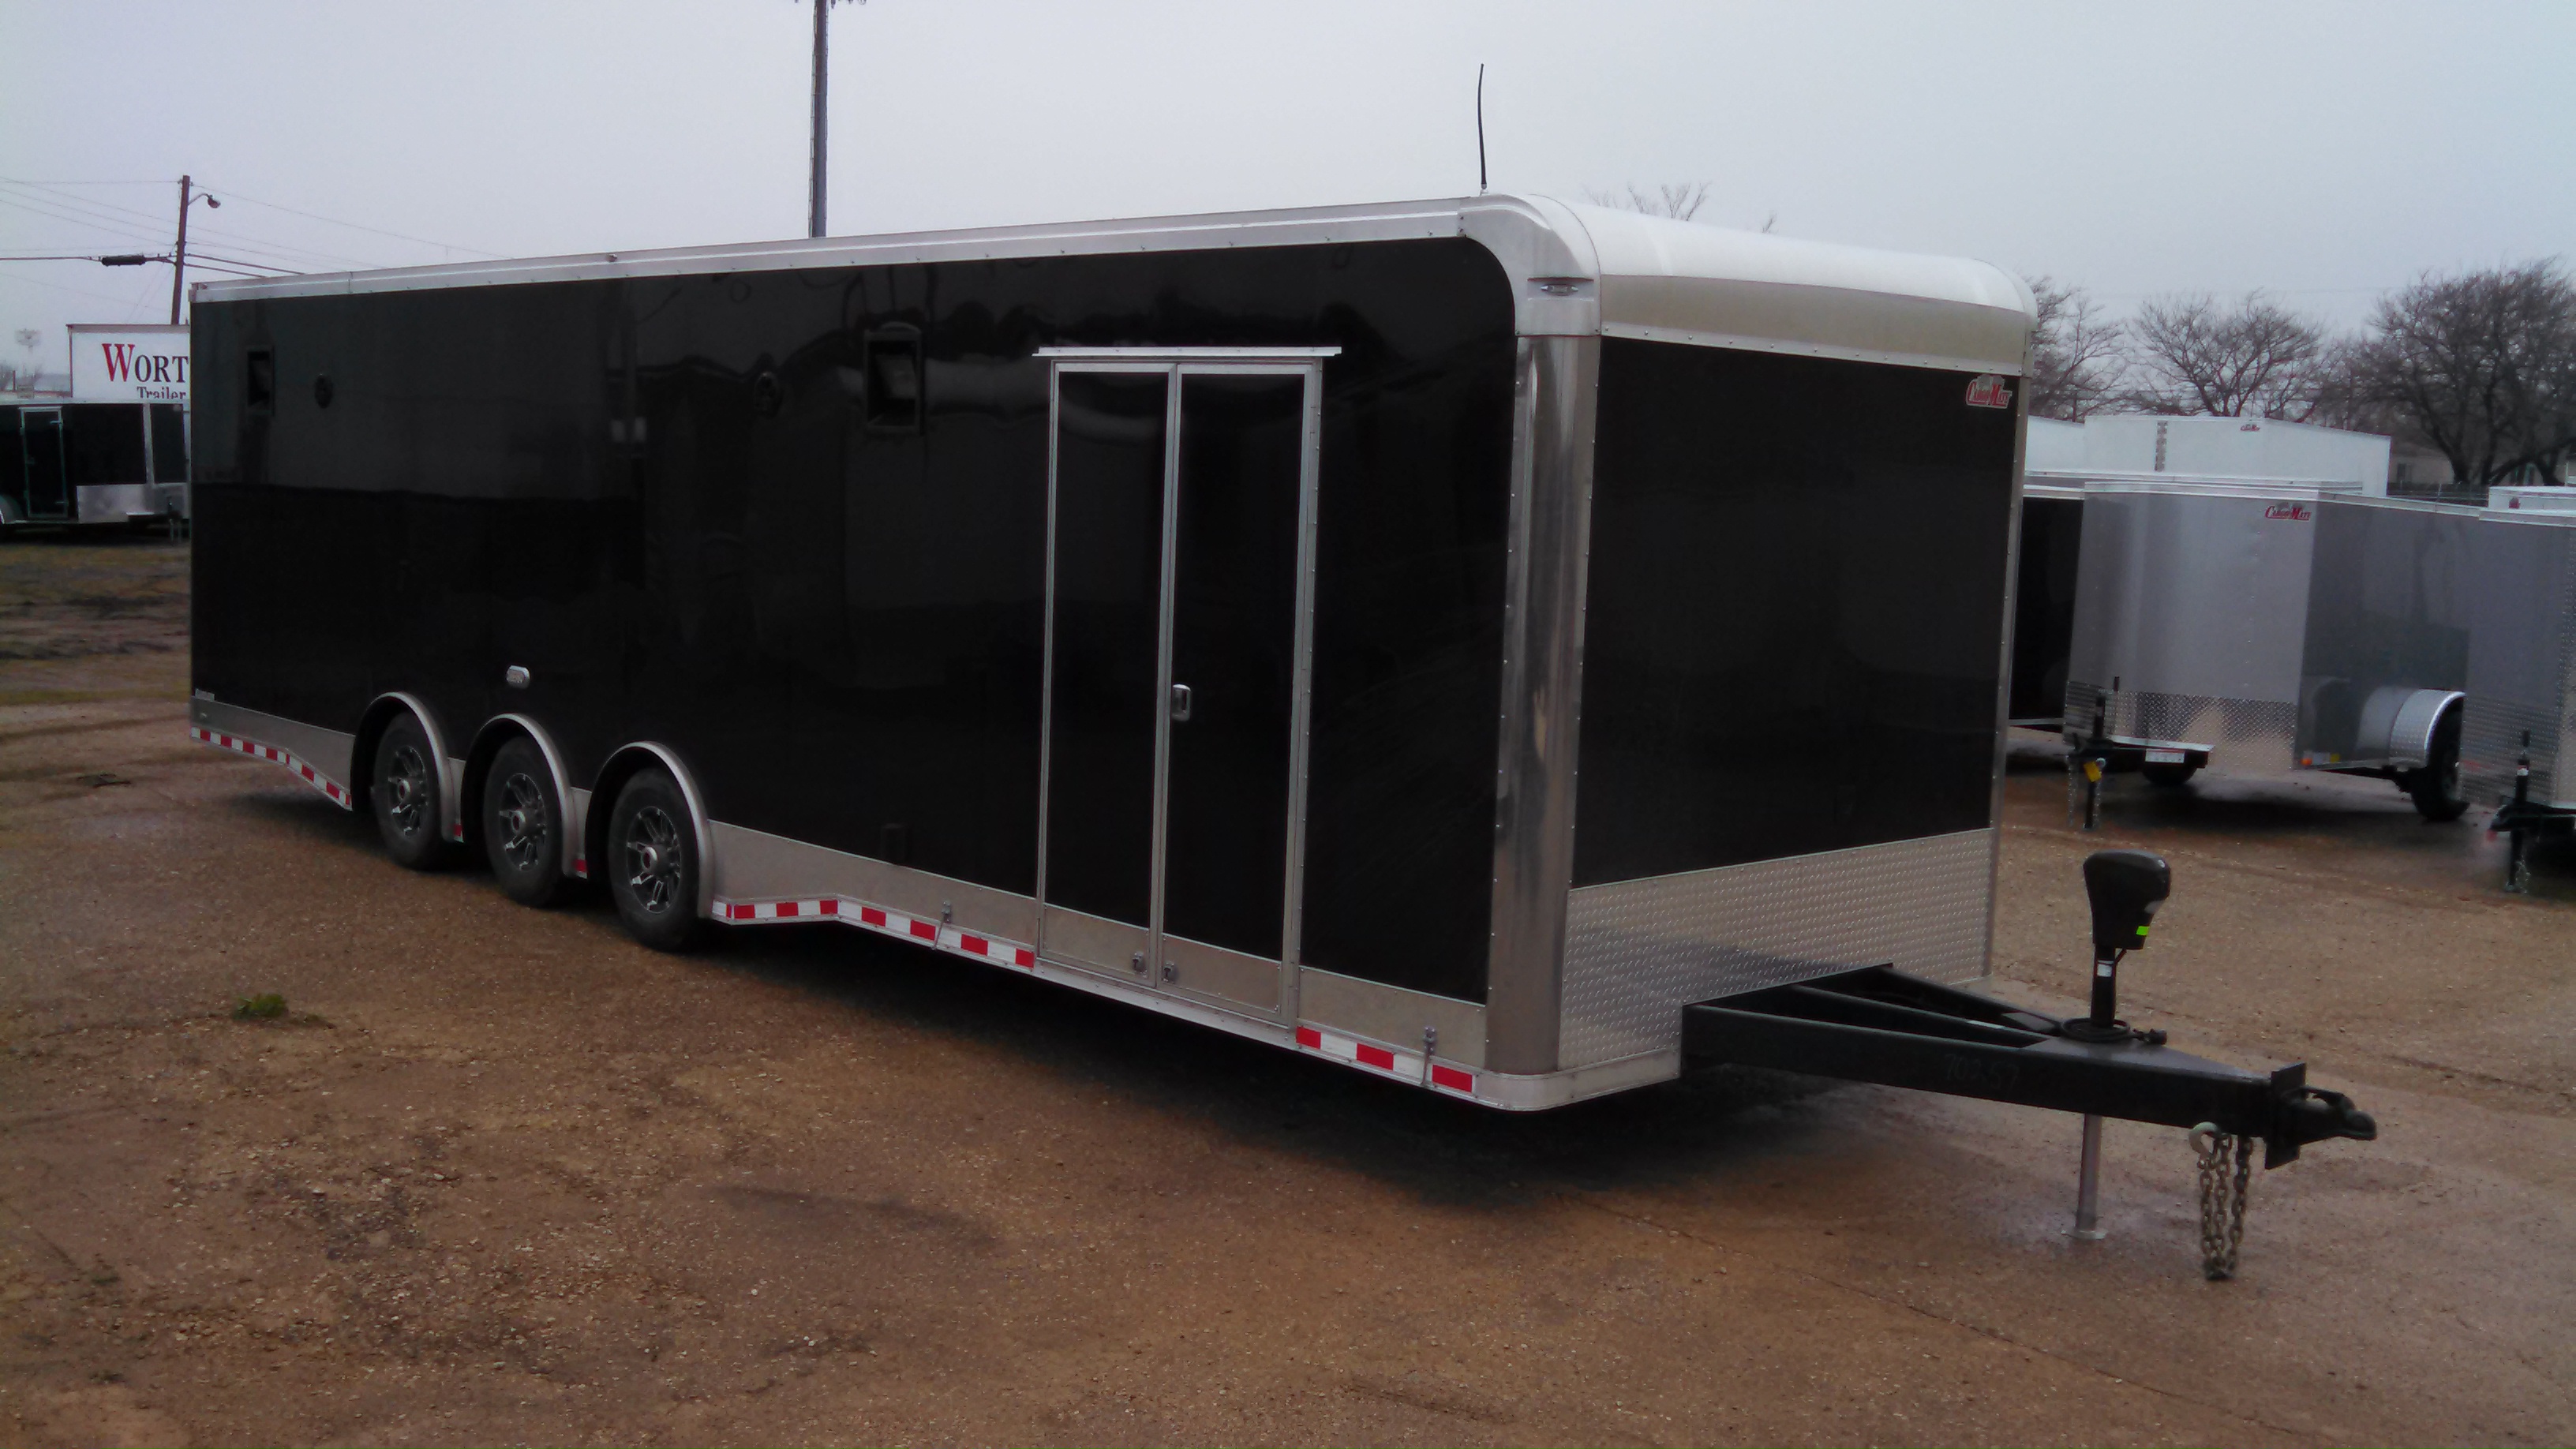 32 ft enclosed gooseneck trailer for sale. 